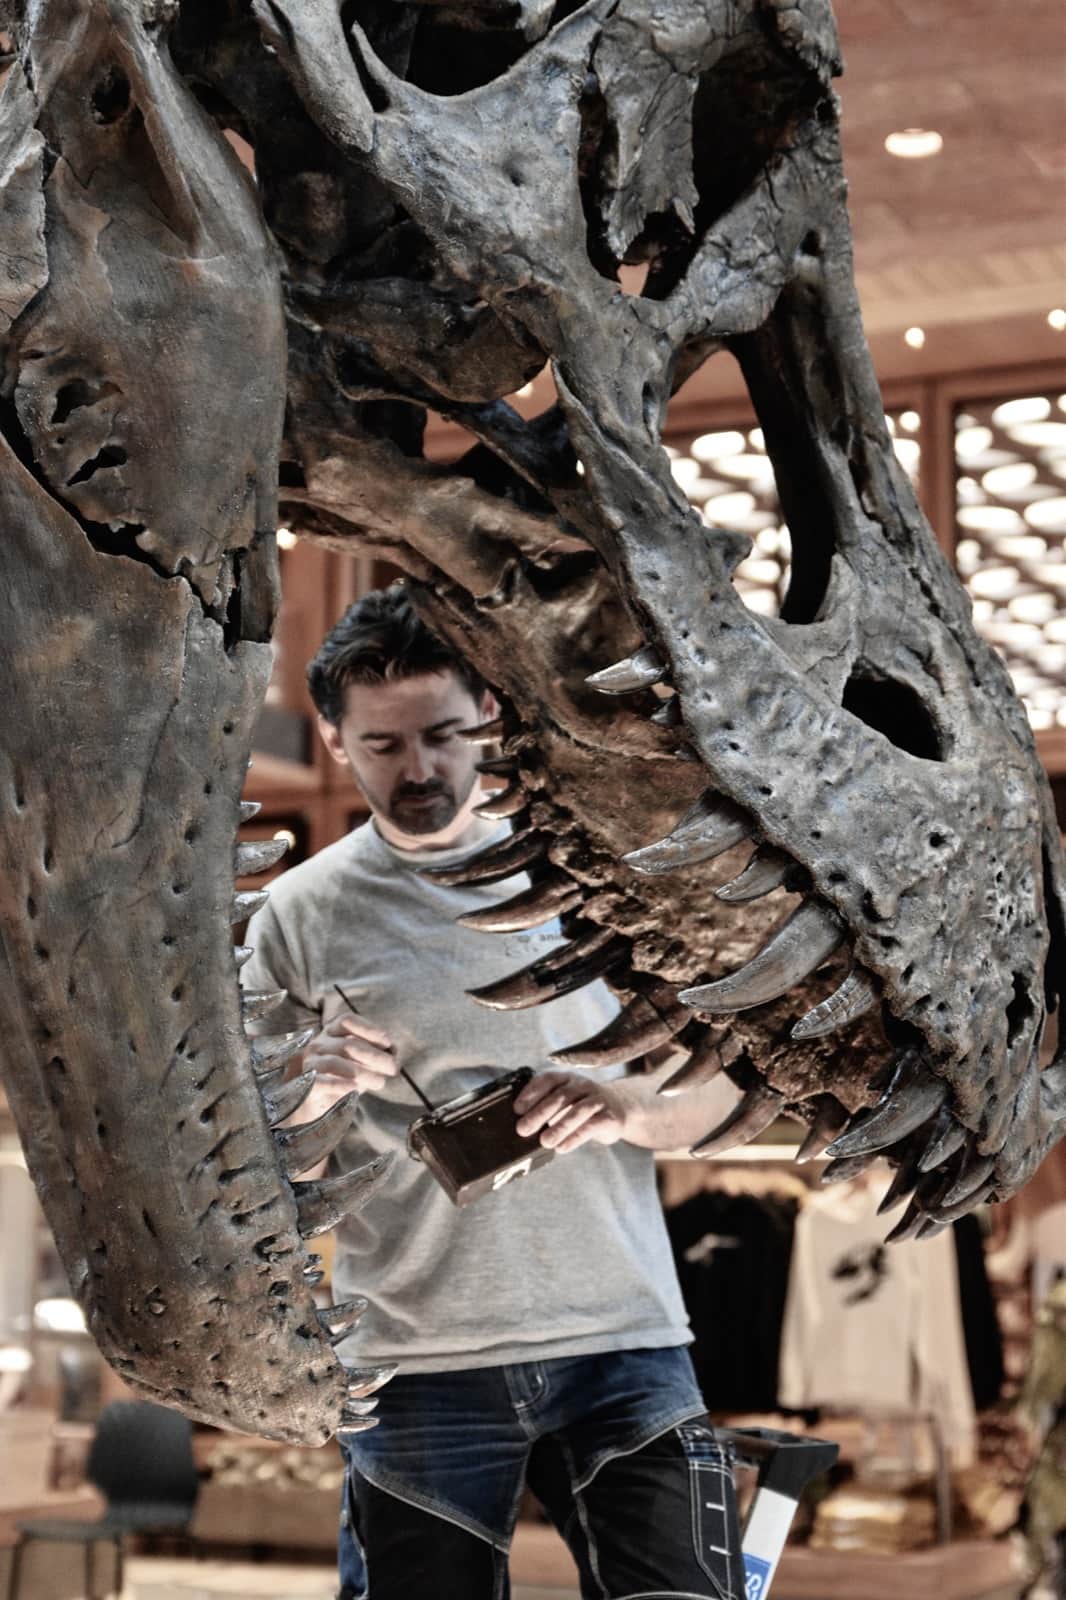 Fossilien & Dinosaurier | Lackier- und Montagearbeiten 3D-print T-Rex Trix | Naturalis Biodiversity Center | Nagasaki Japan